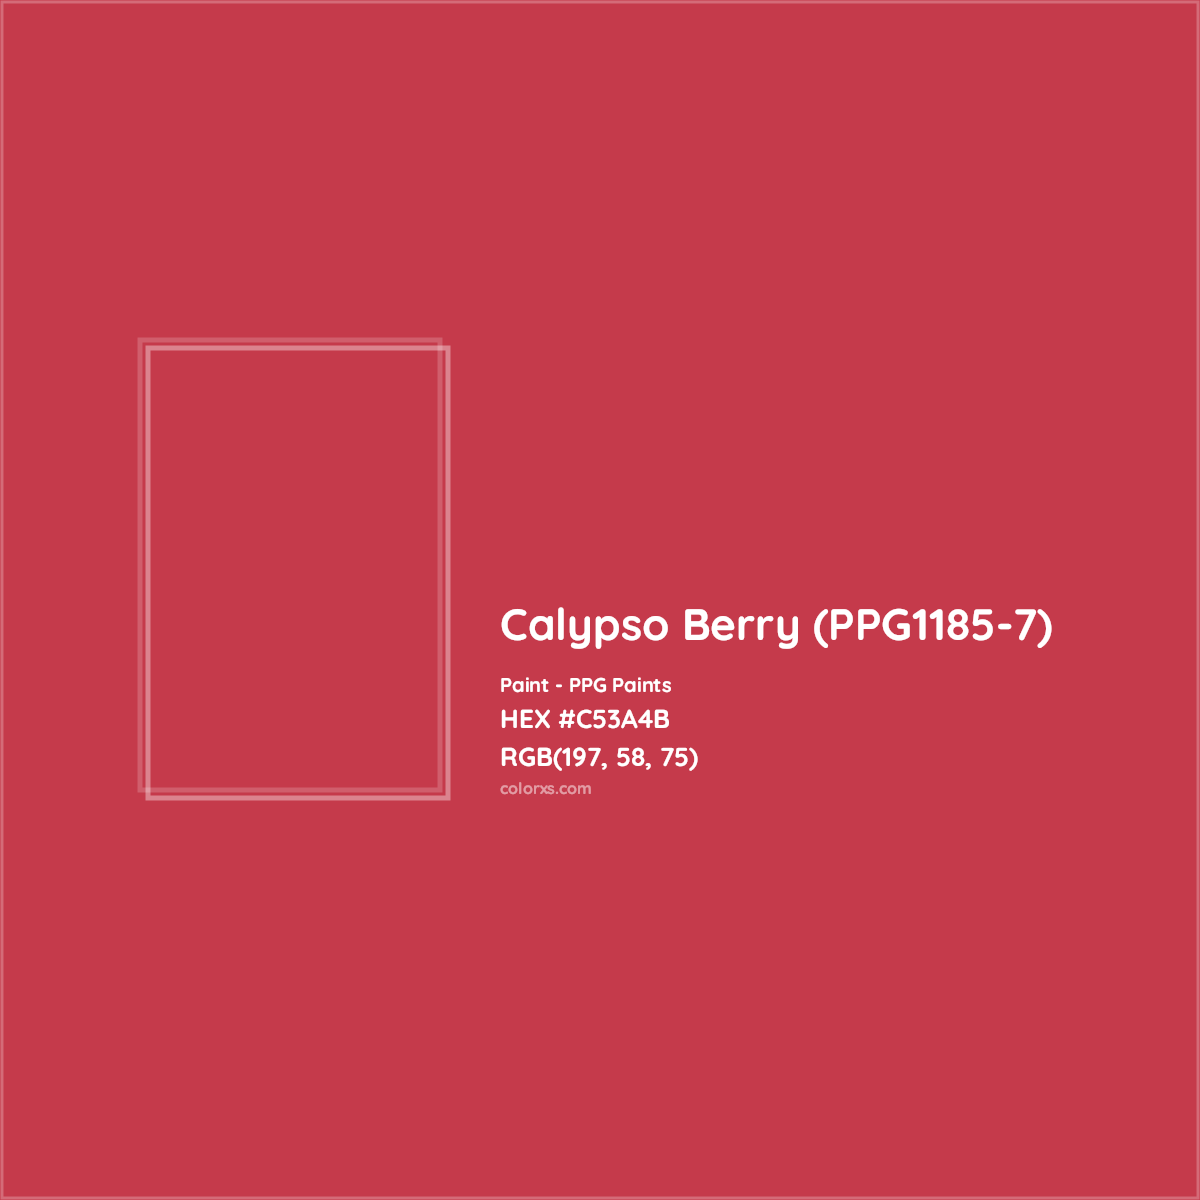 HEX #C53A4B Calypso Berry (PPG1185-7) Paint PPG Paints - Color Code